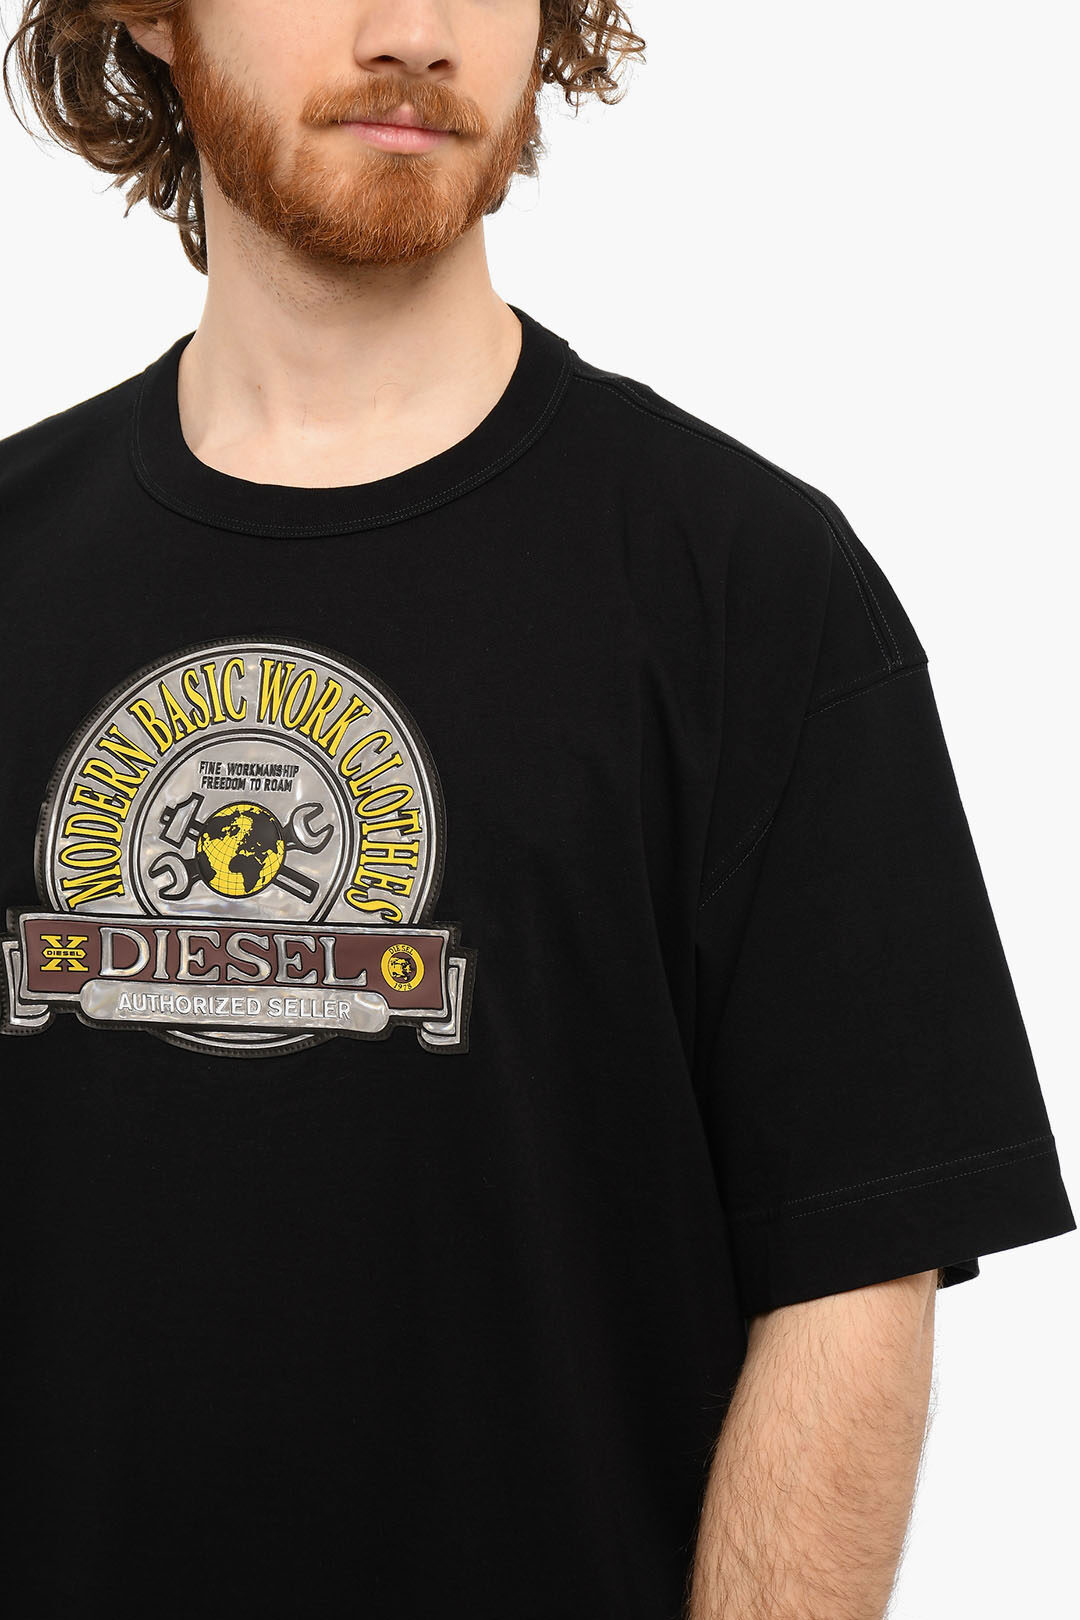 Diesel T-BEGGY-D1 Tシャツ XXLサイズQUEENメンズアパレル